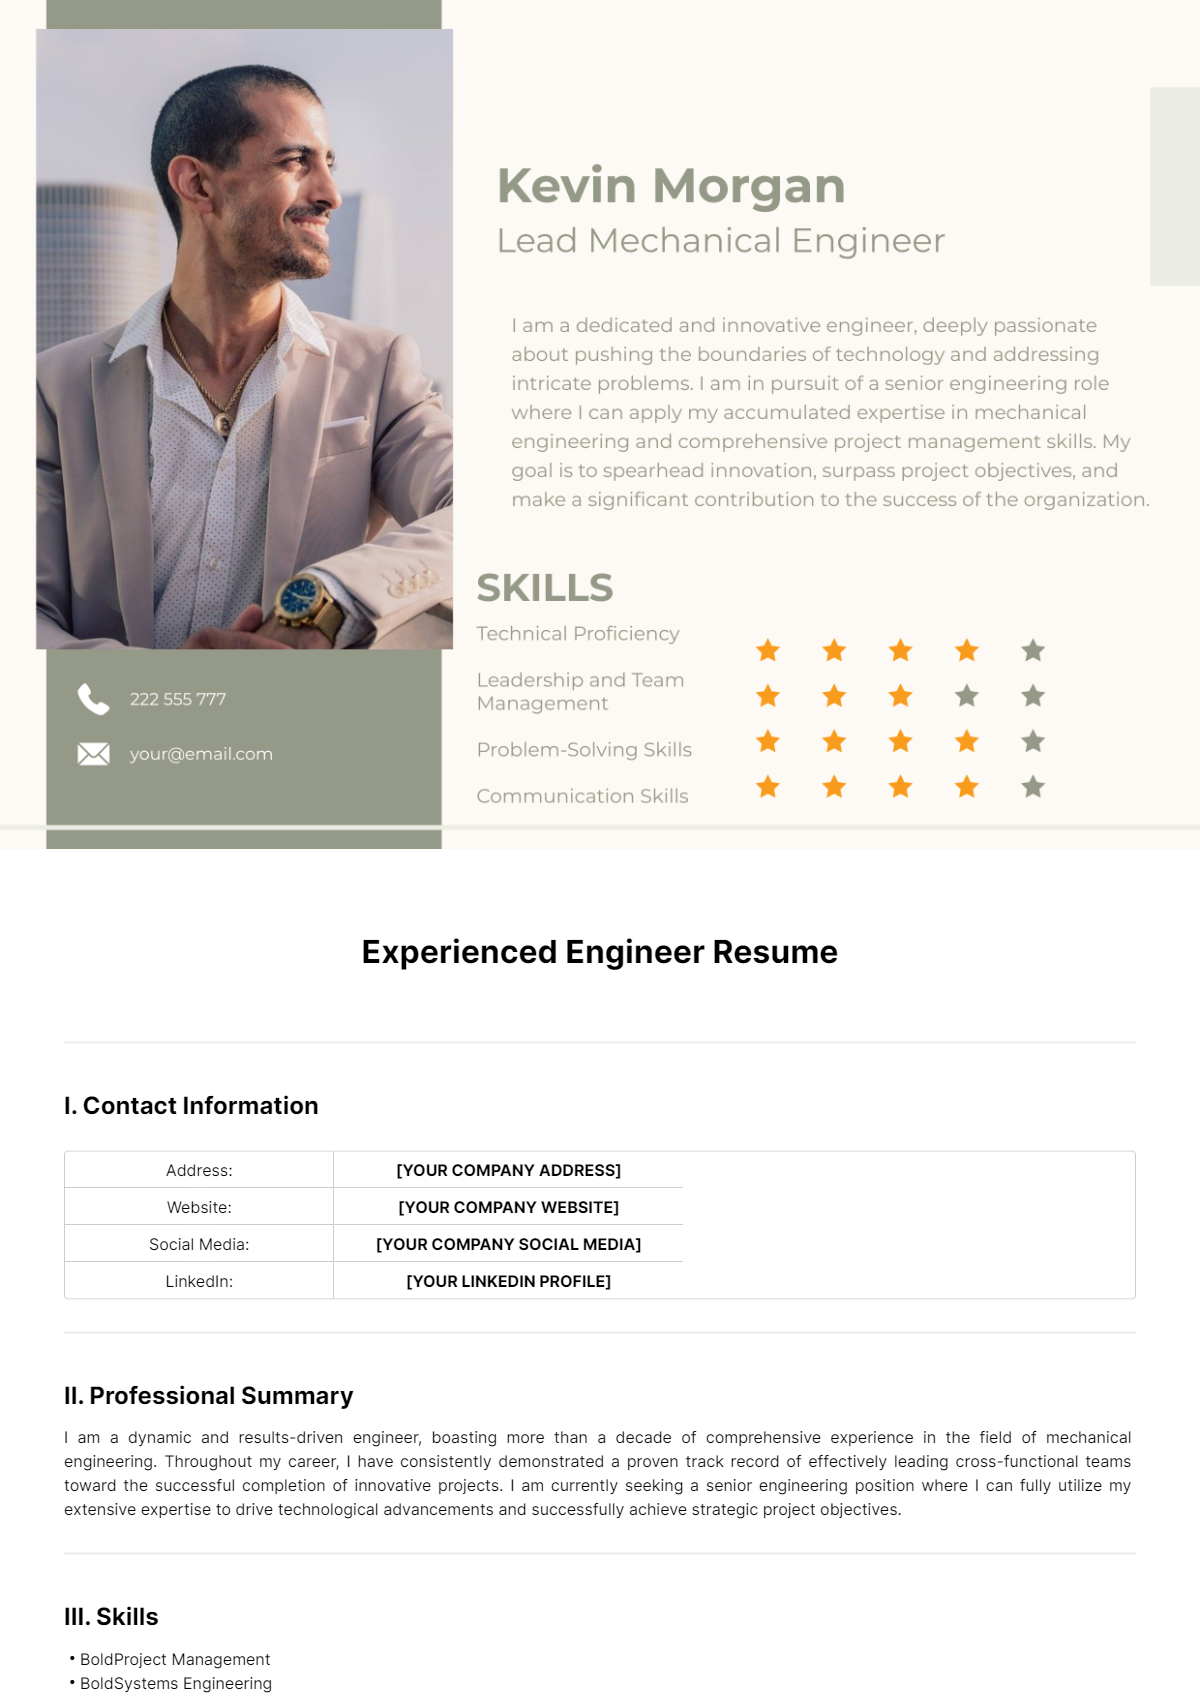 Experienced Engineer Resume